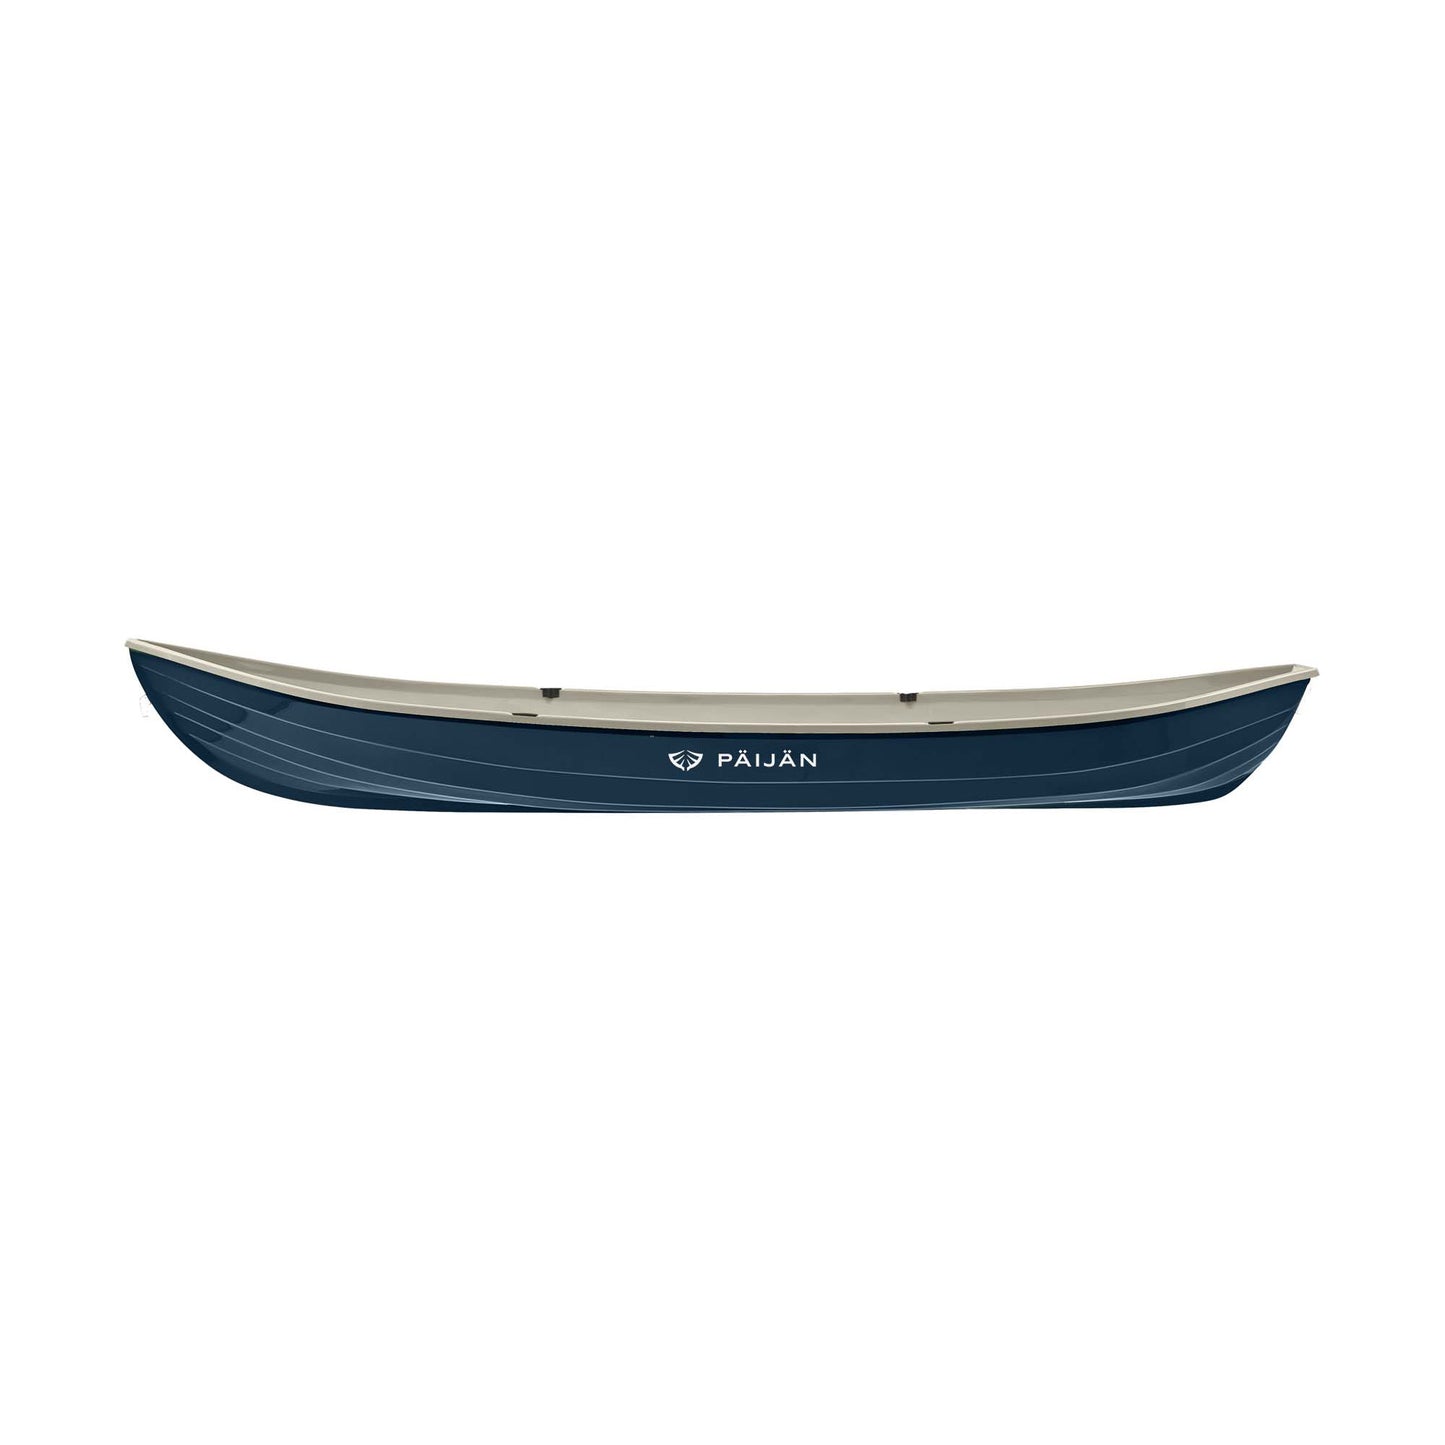 Päijän Syvänne 471L rowing boat - Limited Edition